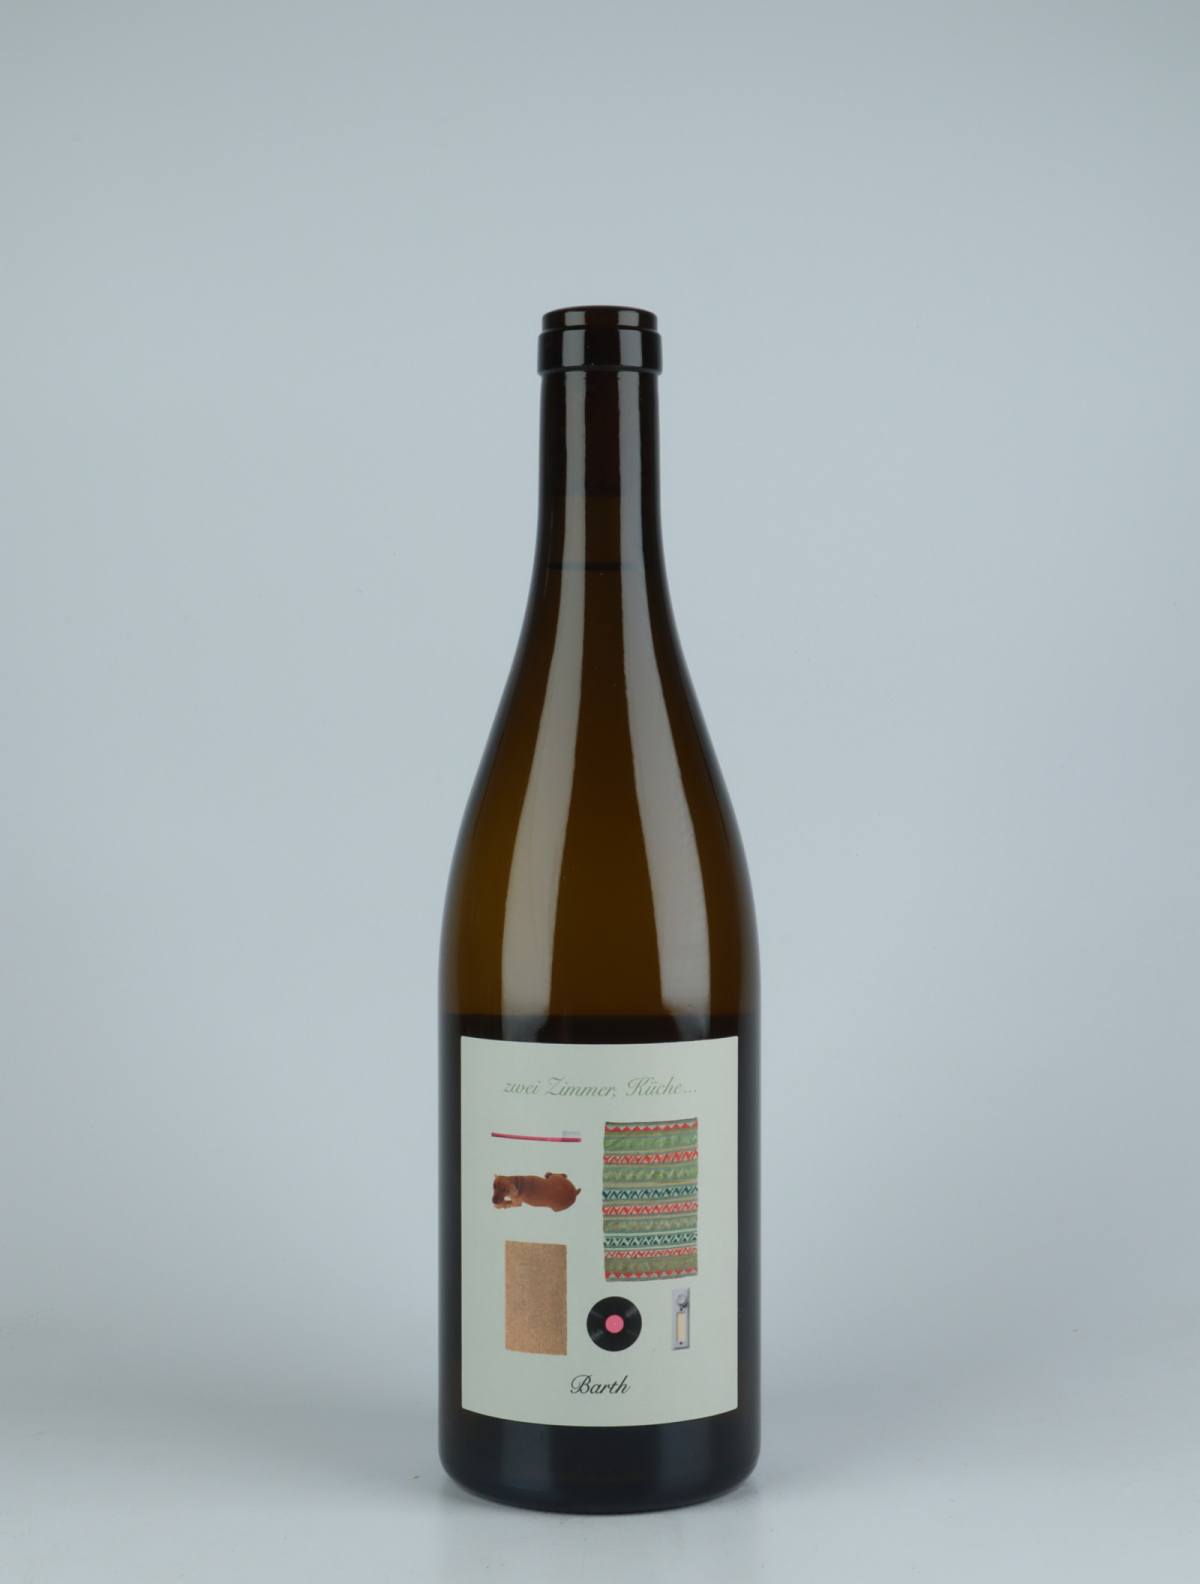 A bottle 2020 Zwei Zimmer, Küche, Barth White wine from Christopher Barth, Rheinhessen in Germany